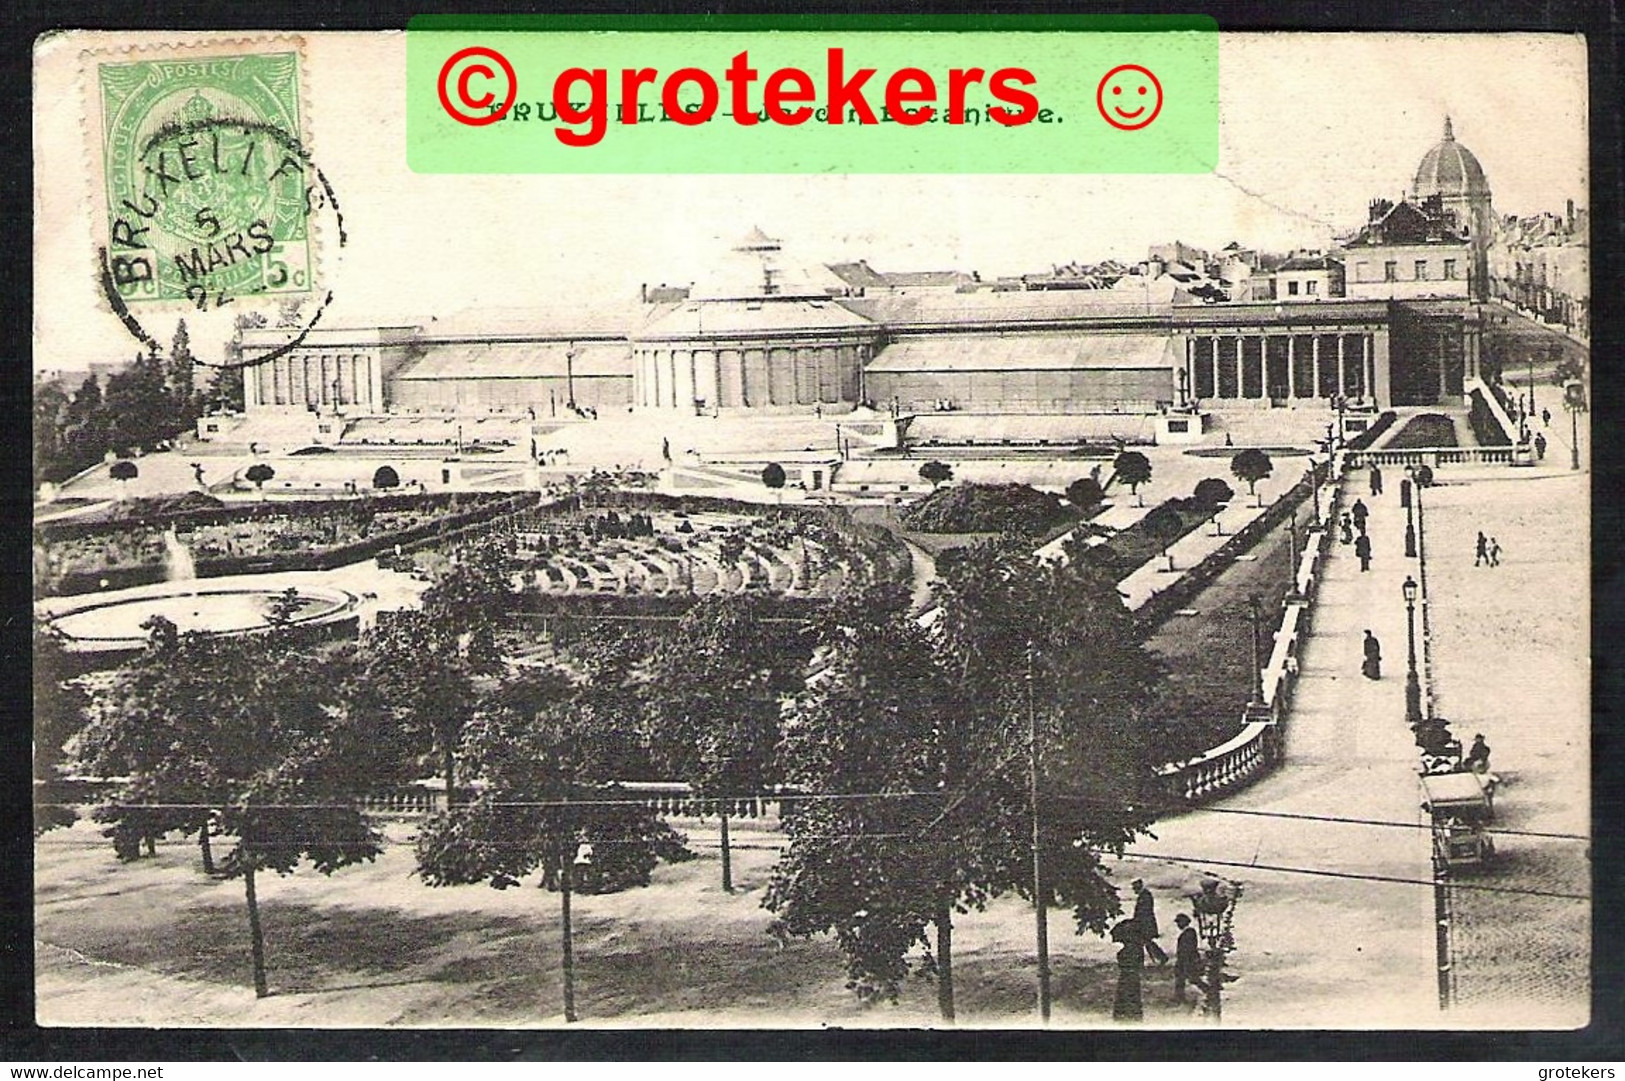 BRUXELLES Jardin Botanique ± 1903 - Bossen, Parken, Tuinen